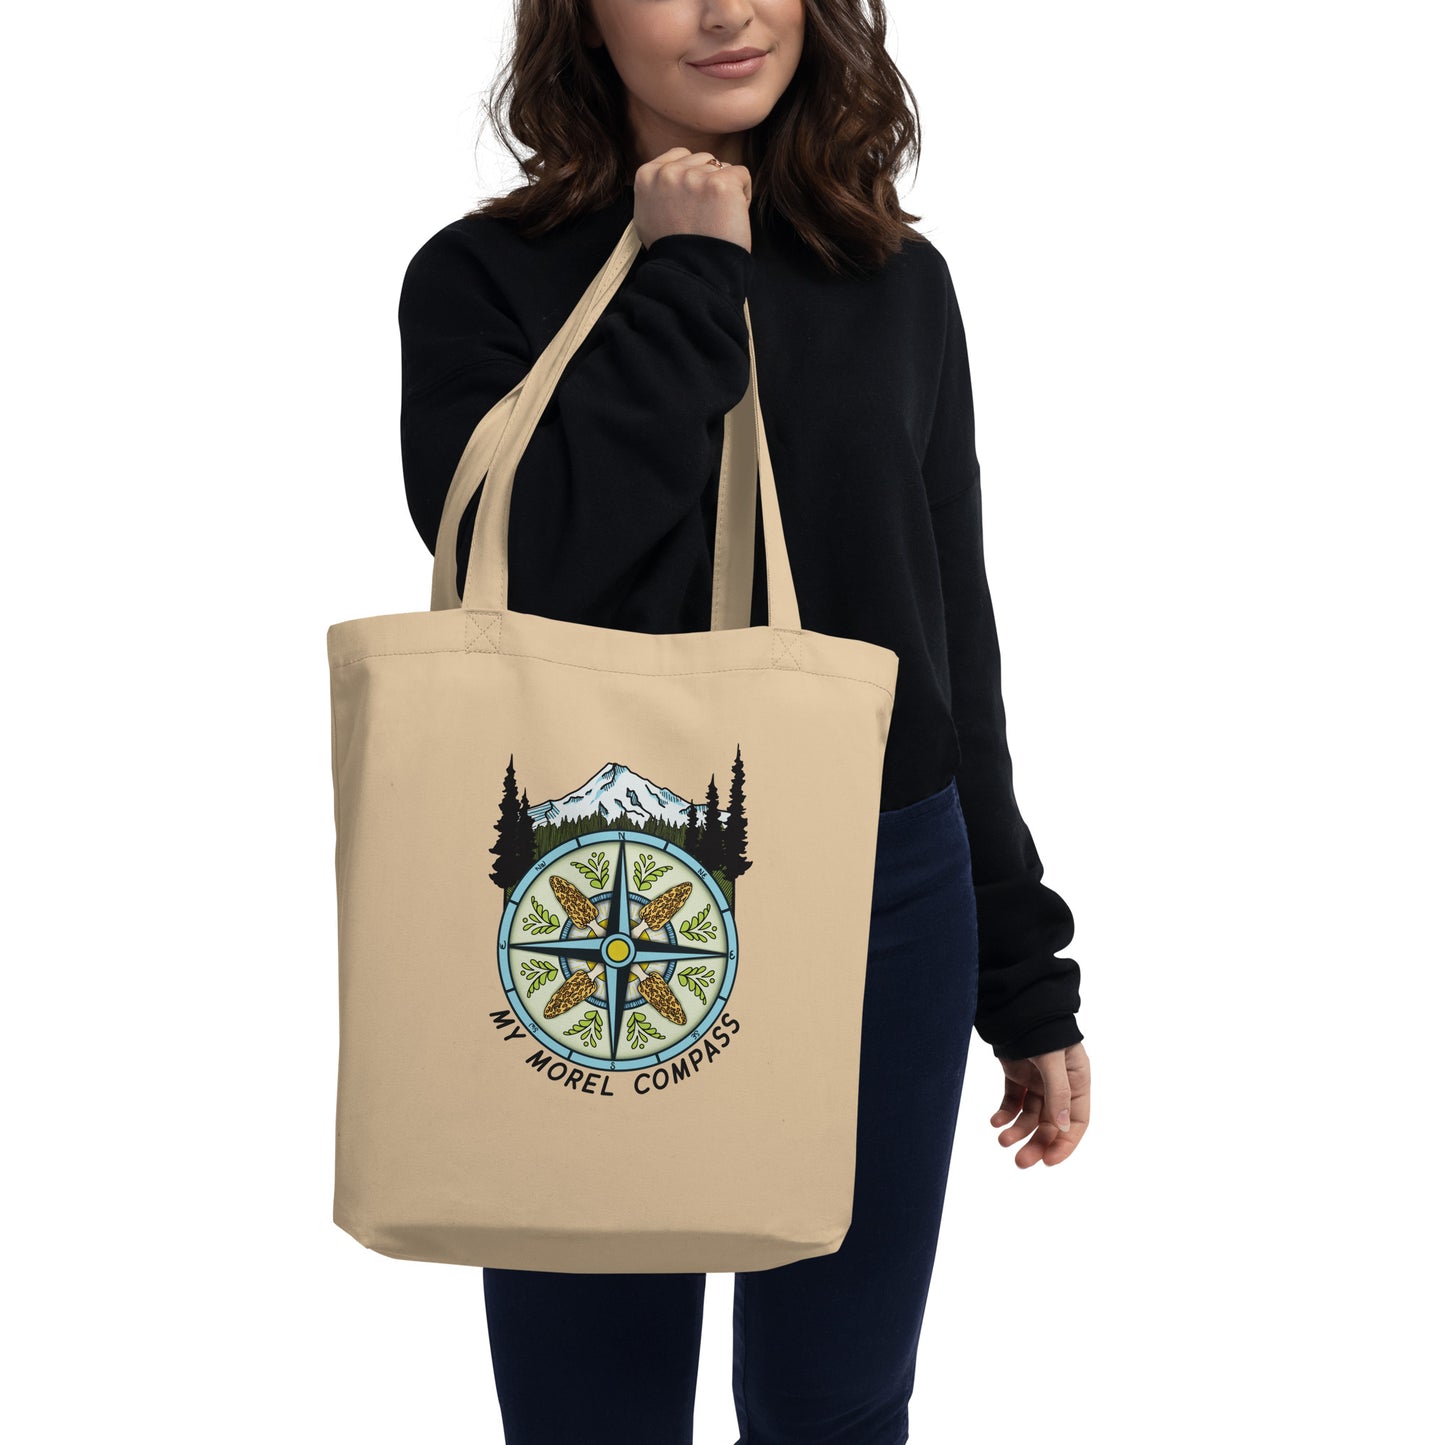 My Morel Compass | Eco Friendly Tote Bag | Funny Morel Mushroom Artwork